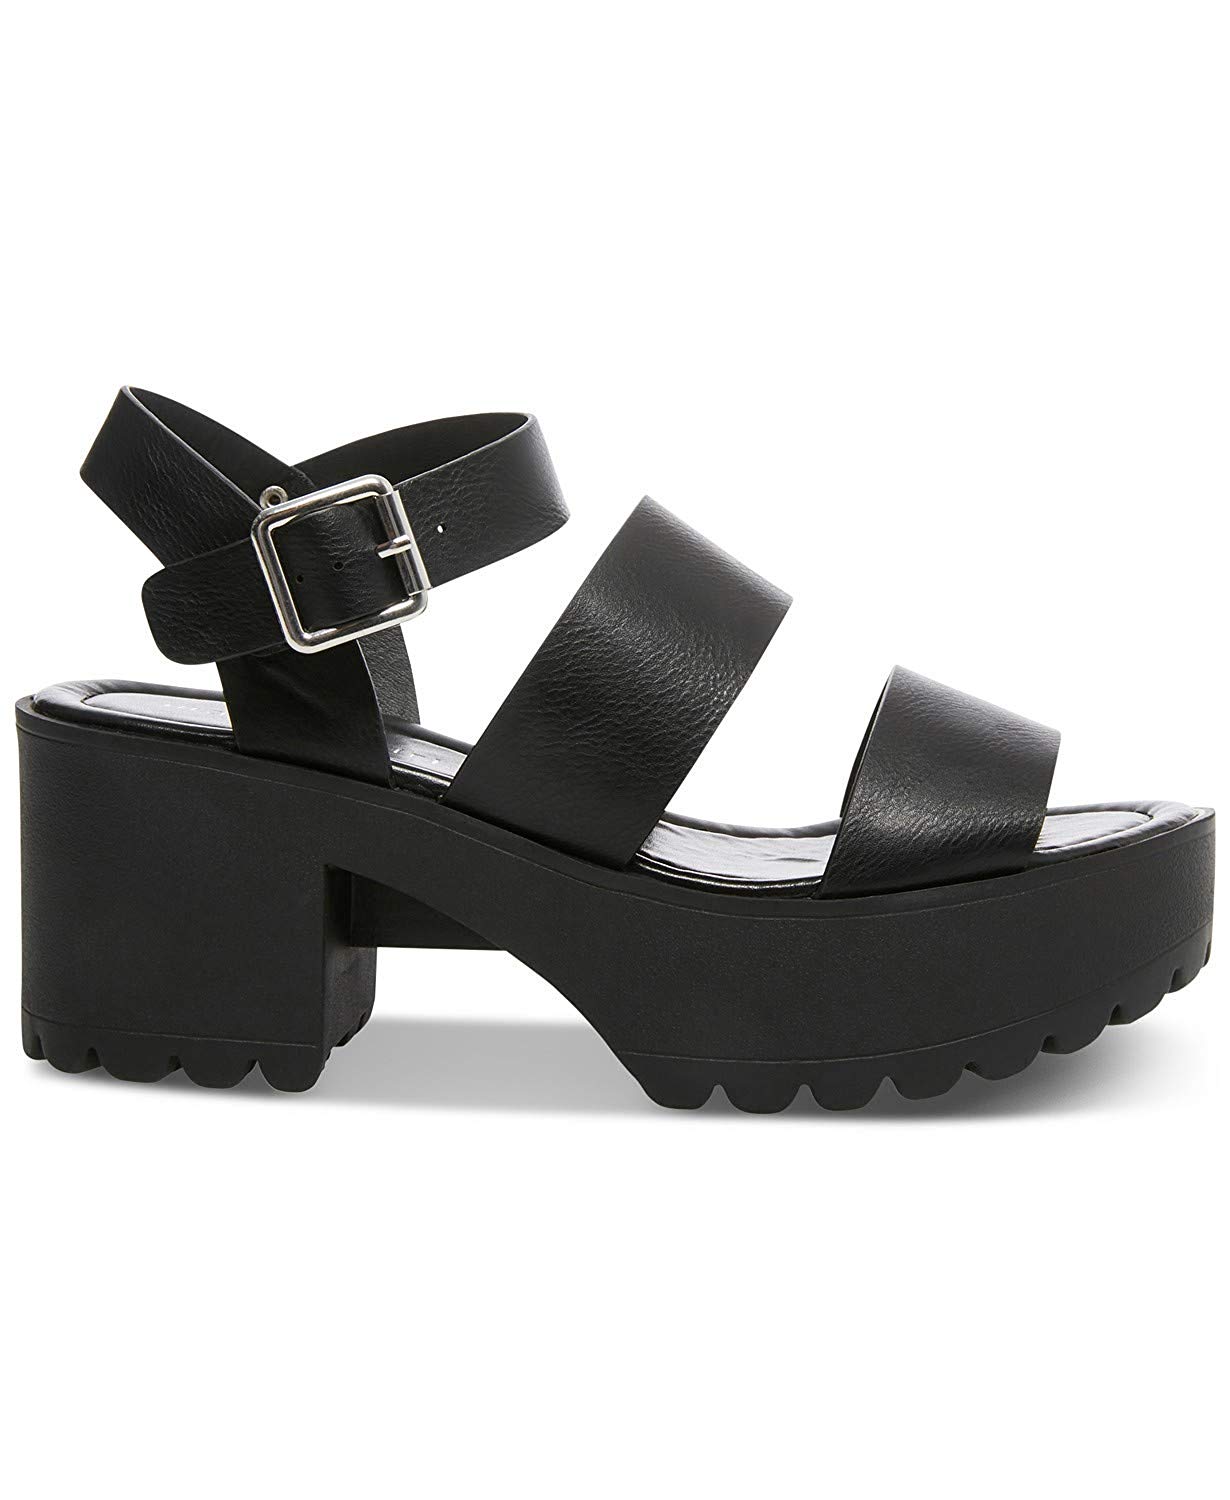 Madden Girl Women's Carterr Heeled Sandal, Black Paris, Size 8.0 NRCX ...